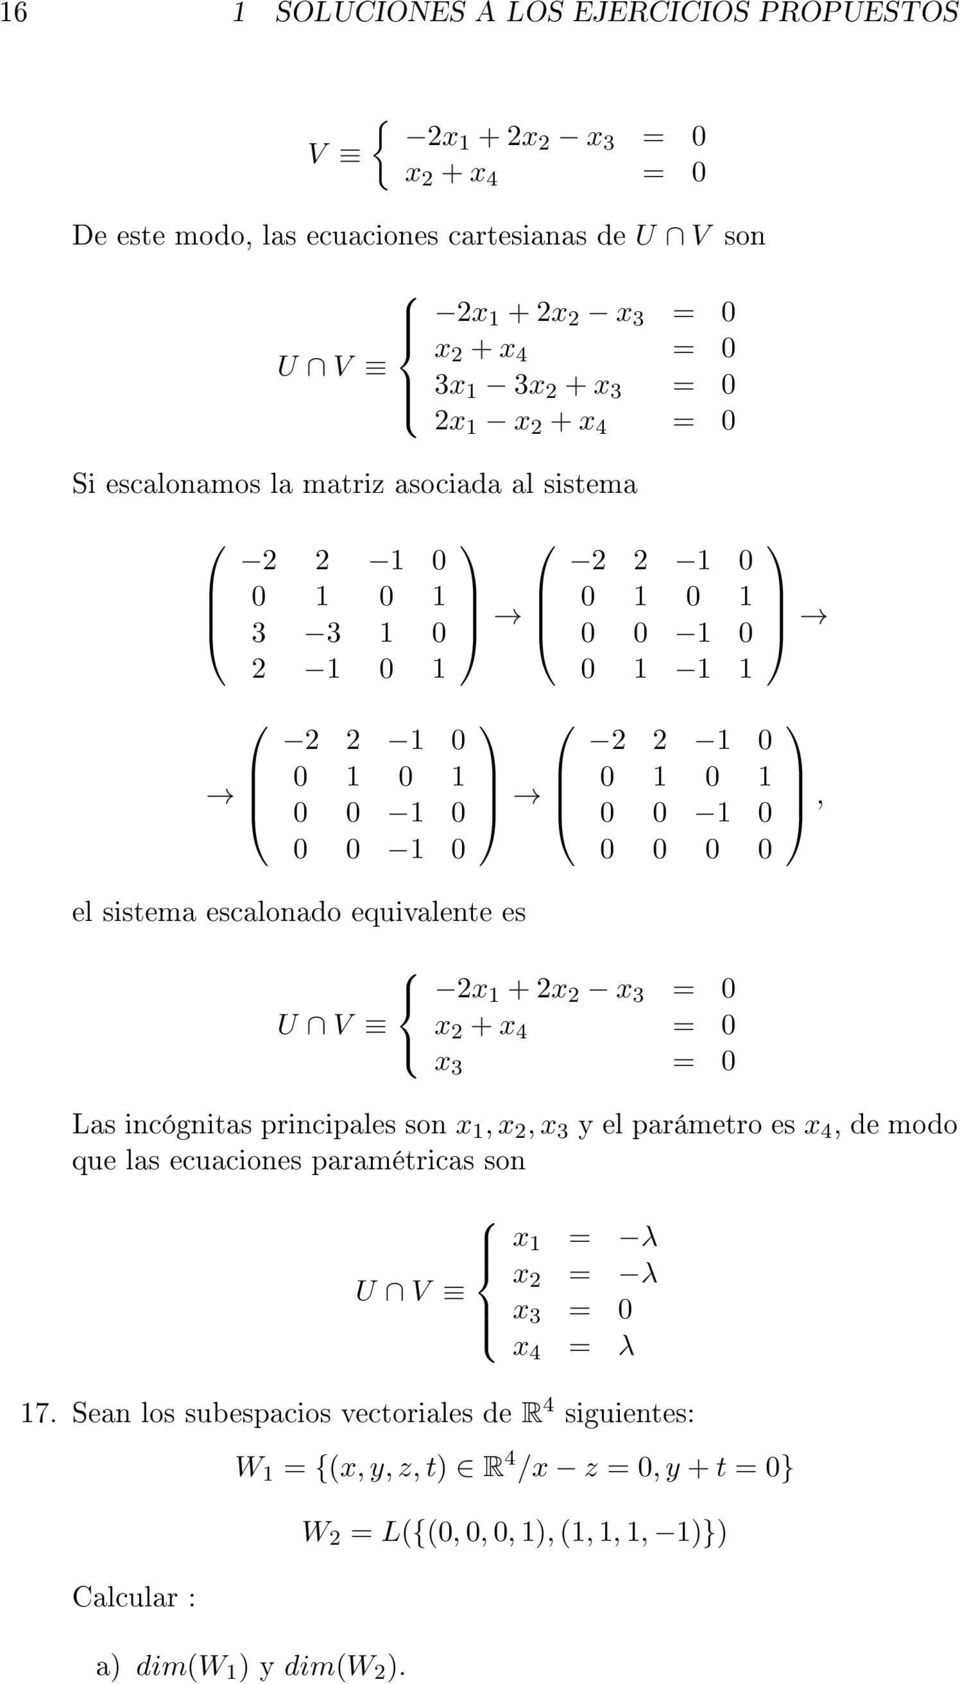 0 1 0 1 0 0 1 0 0 0 0 0 2x 1 + 2x 2 x 3 = 0 U V x 2 + x 4 = 0 x 3 = 0, Las incógnitas principales son x 1, x 2, x 3 y el parámetro es x 4, de modo que las ecuaciones paramétricas son x 1 = λ x U V